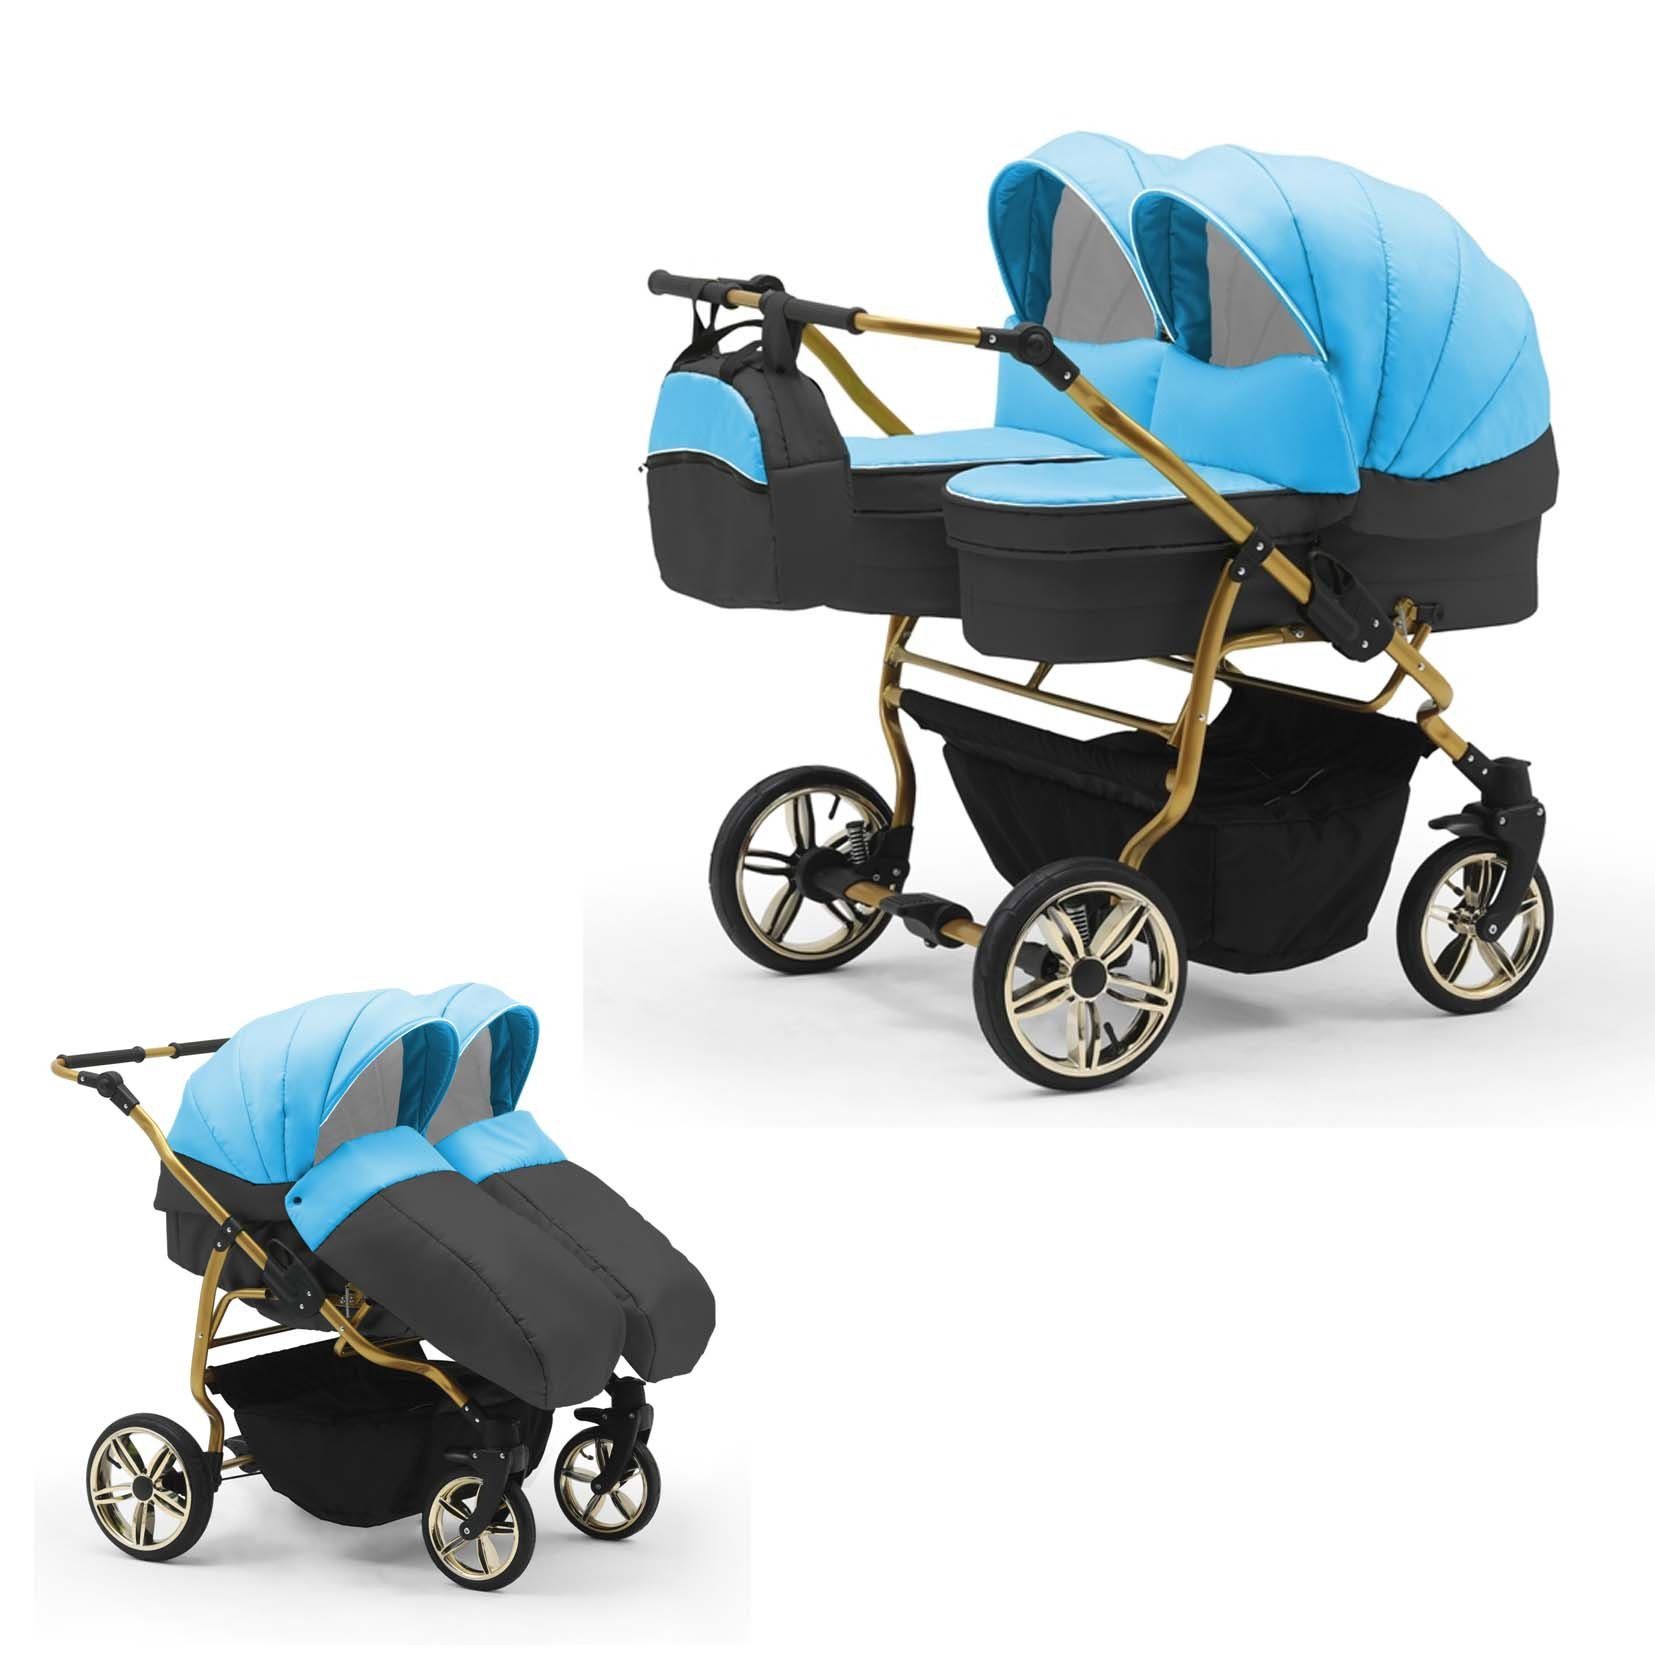 babies-on-wheels Zwillingswagen Duet - - Teile 1 Lux Farben Türkis-Dunkelgrau 10 in in 33 2 Zwillingskinderwagen